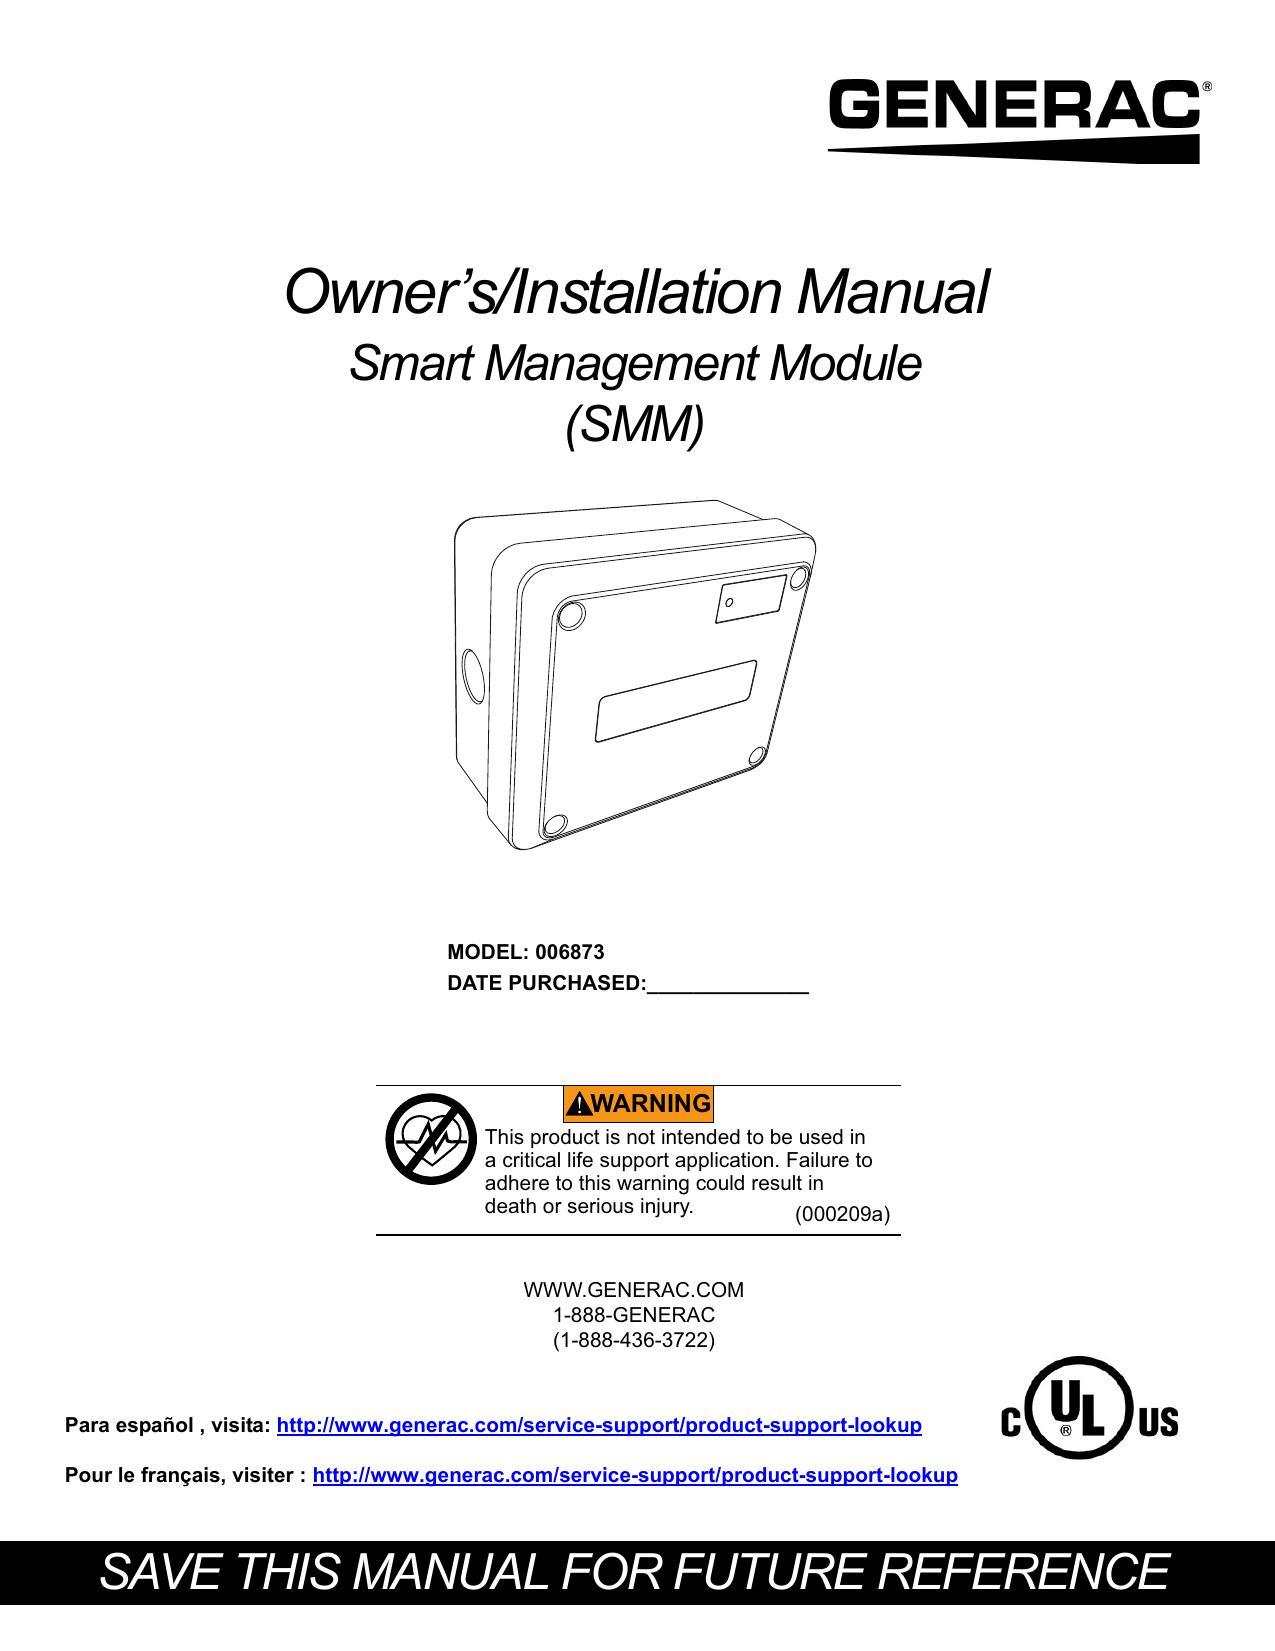 ownersinstallation-manual-for-smart-management-module-smm-model-006873.pdf